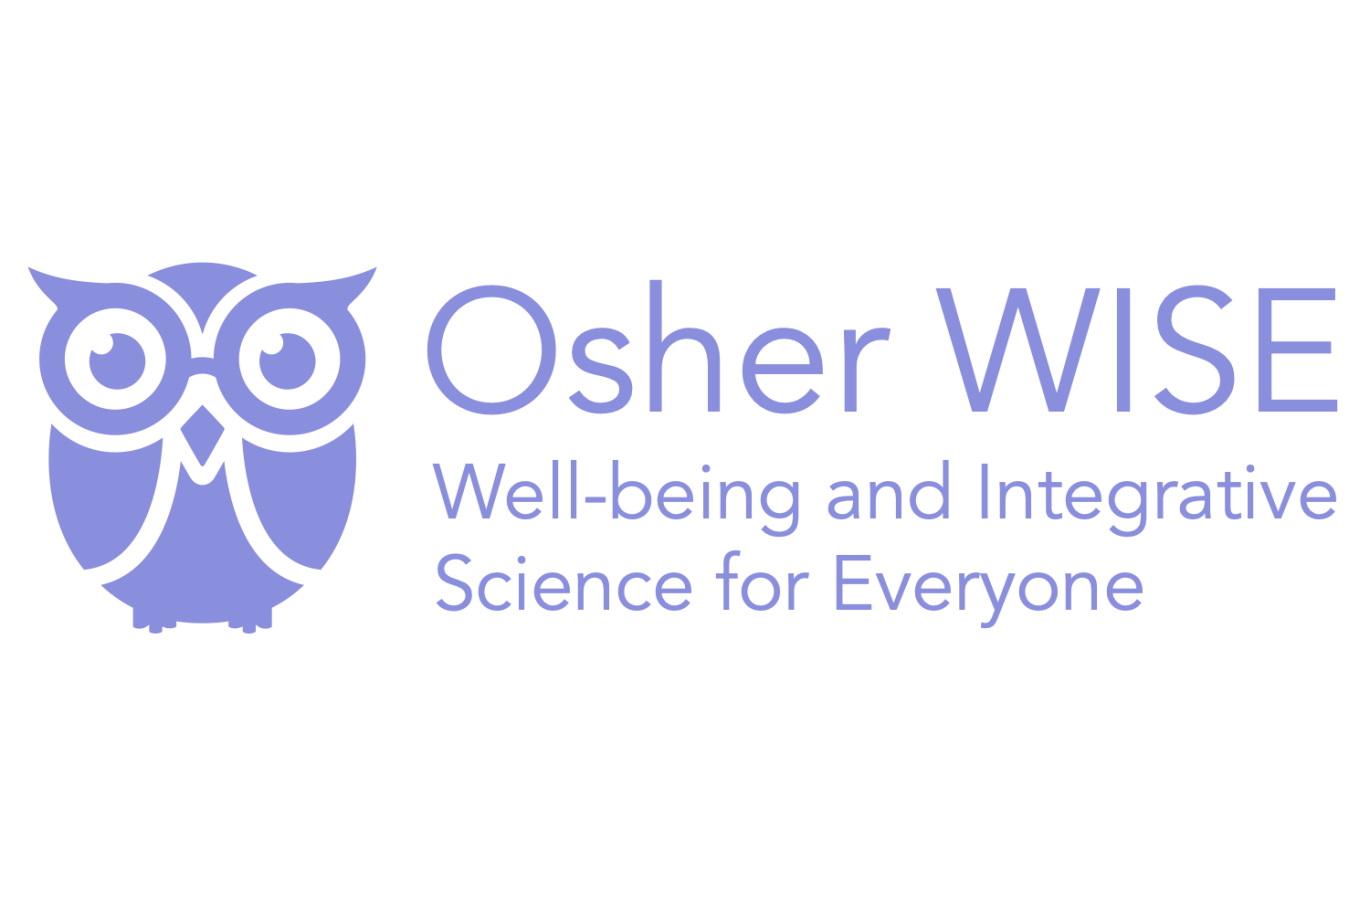 Osher WISE logo